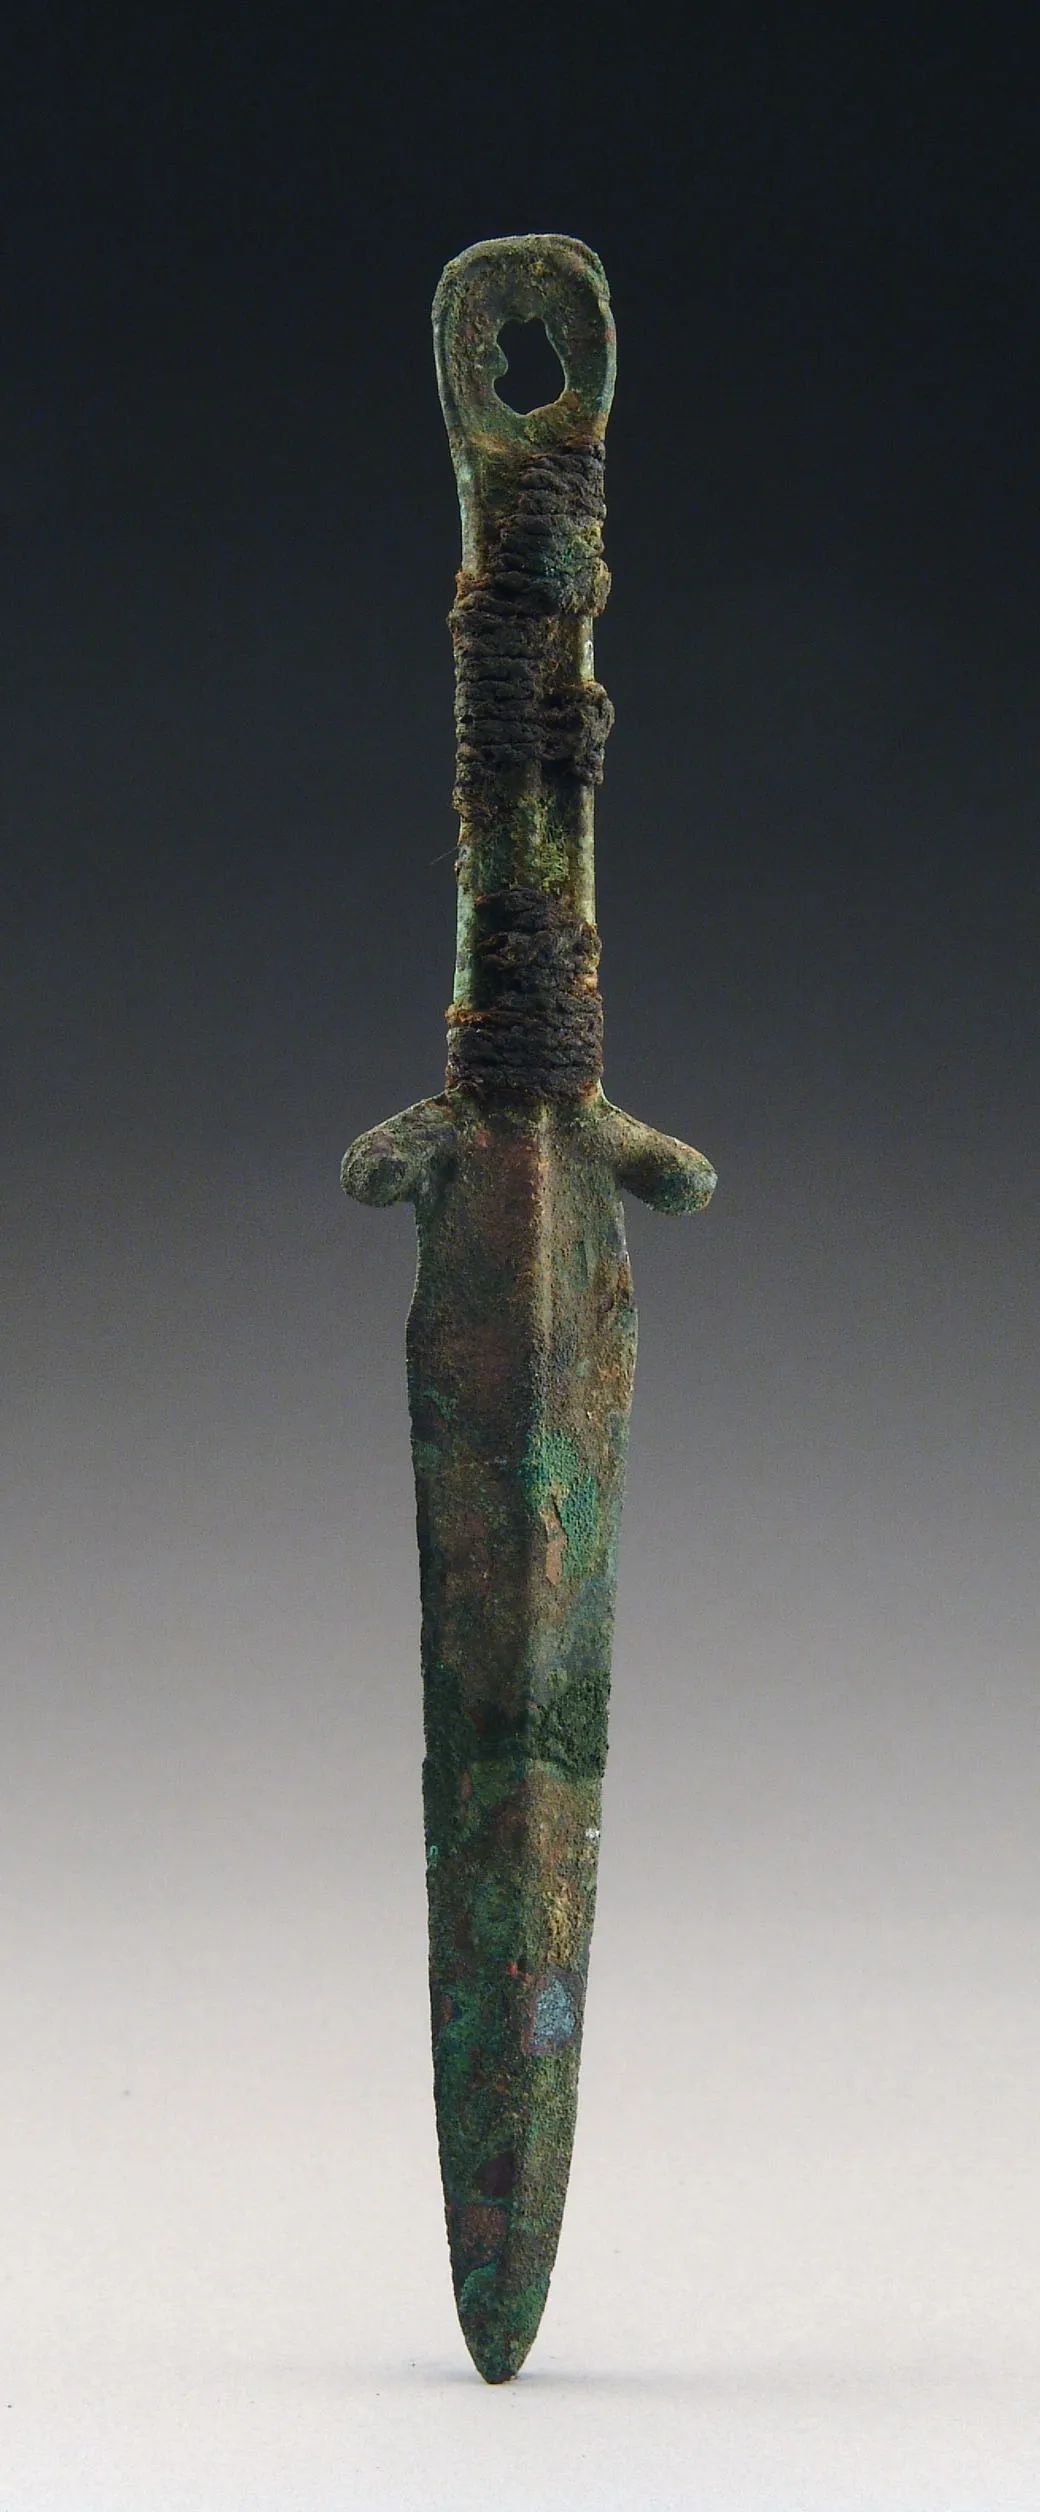 朱开沟出土了中国最早的青铜剑(环首直柄剑)和环首刀,都属于早期北方